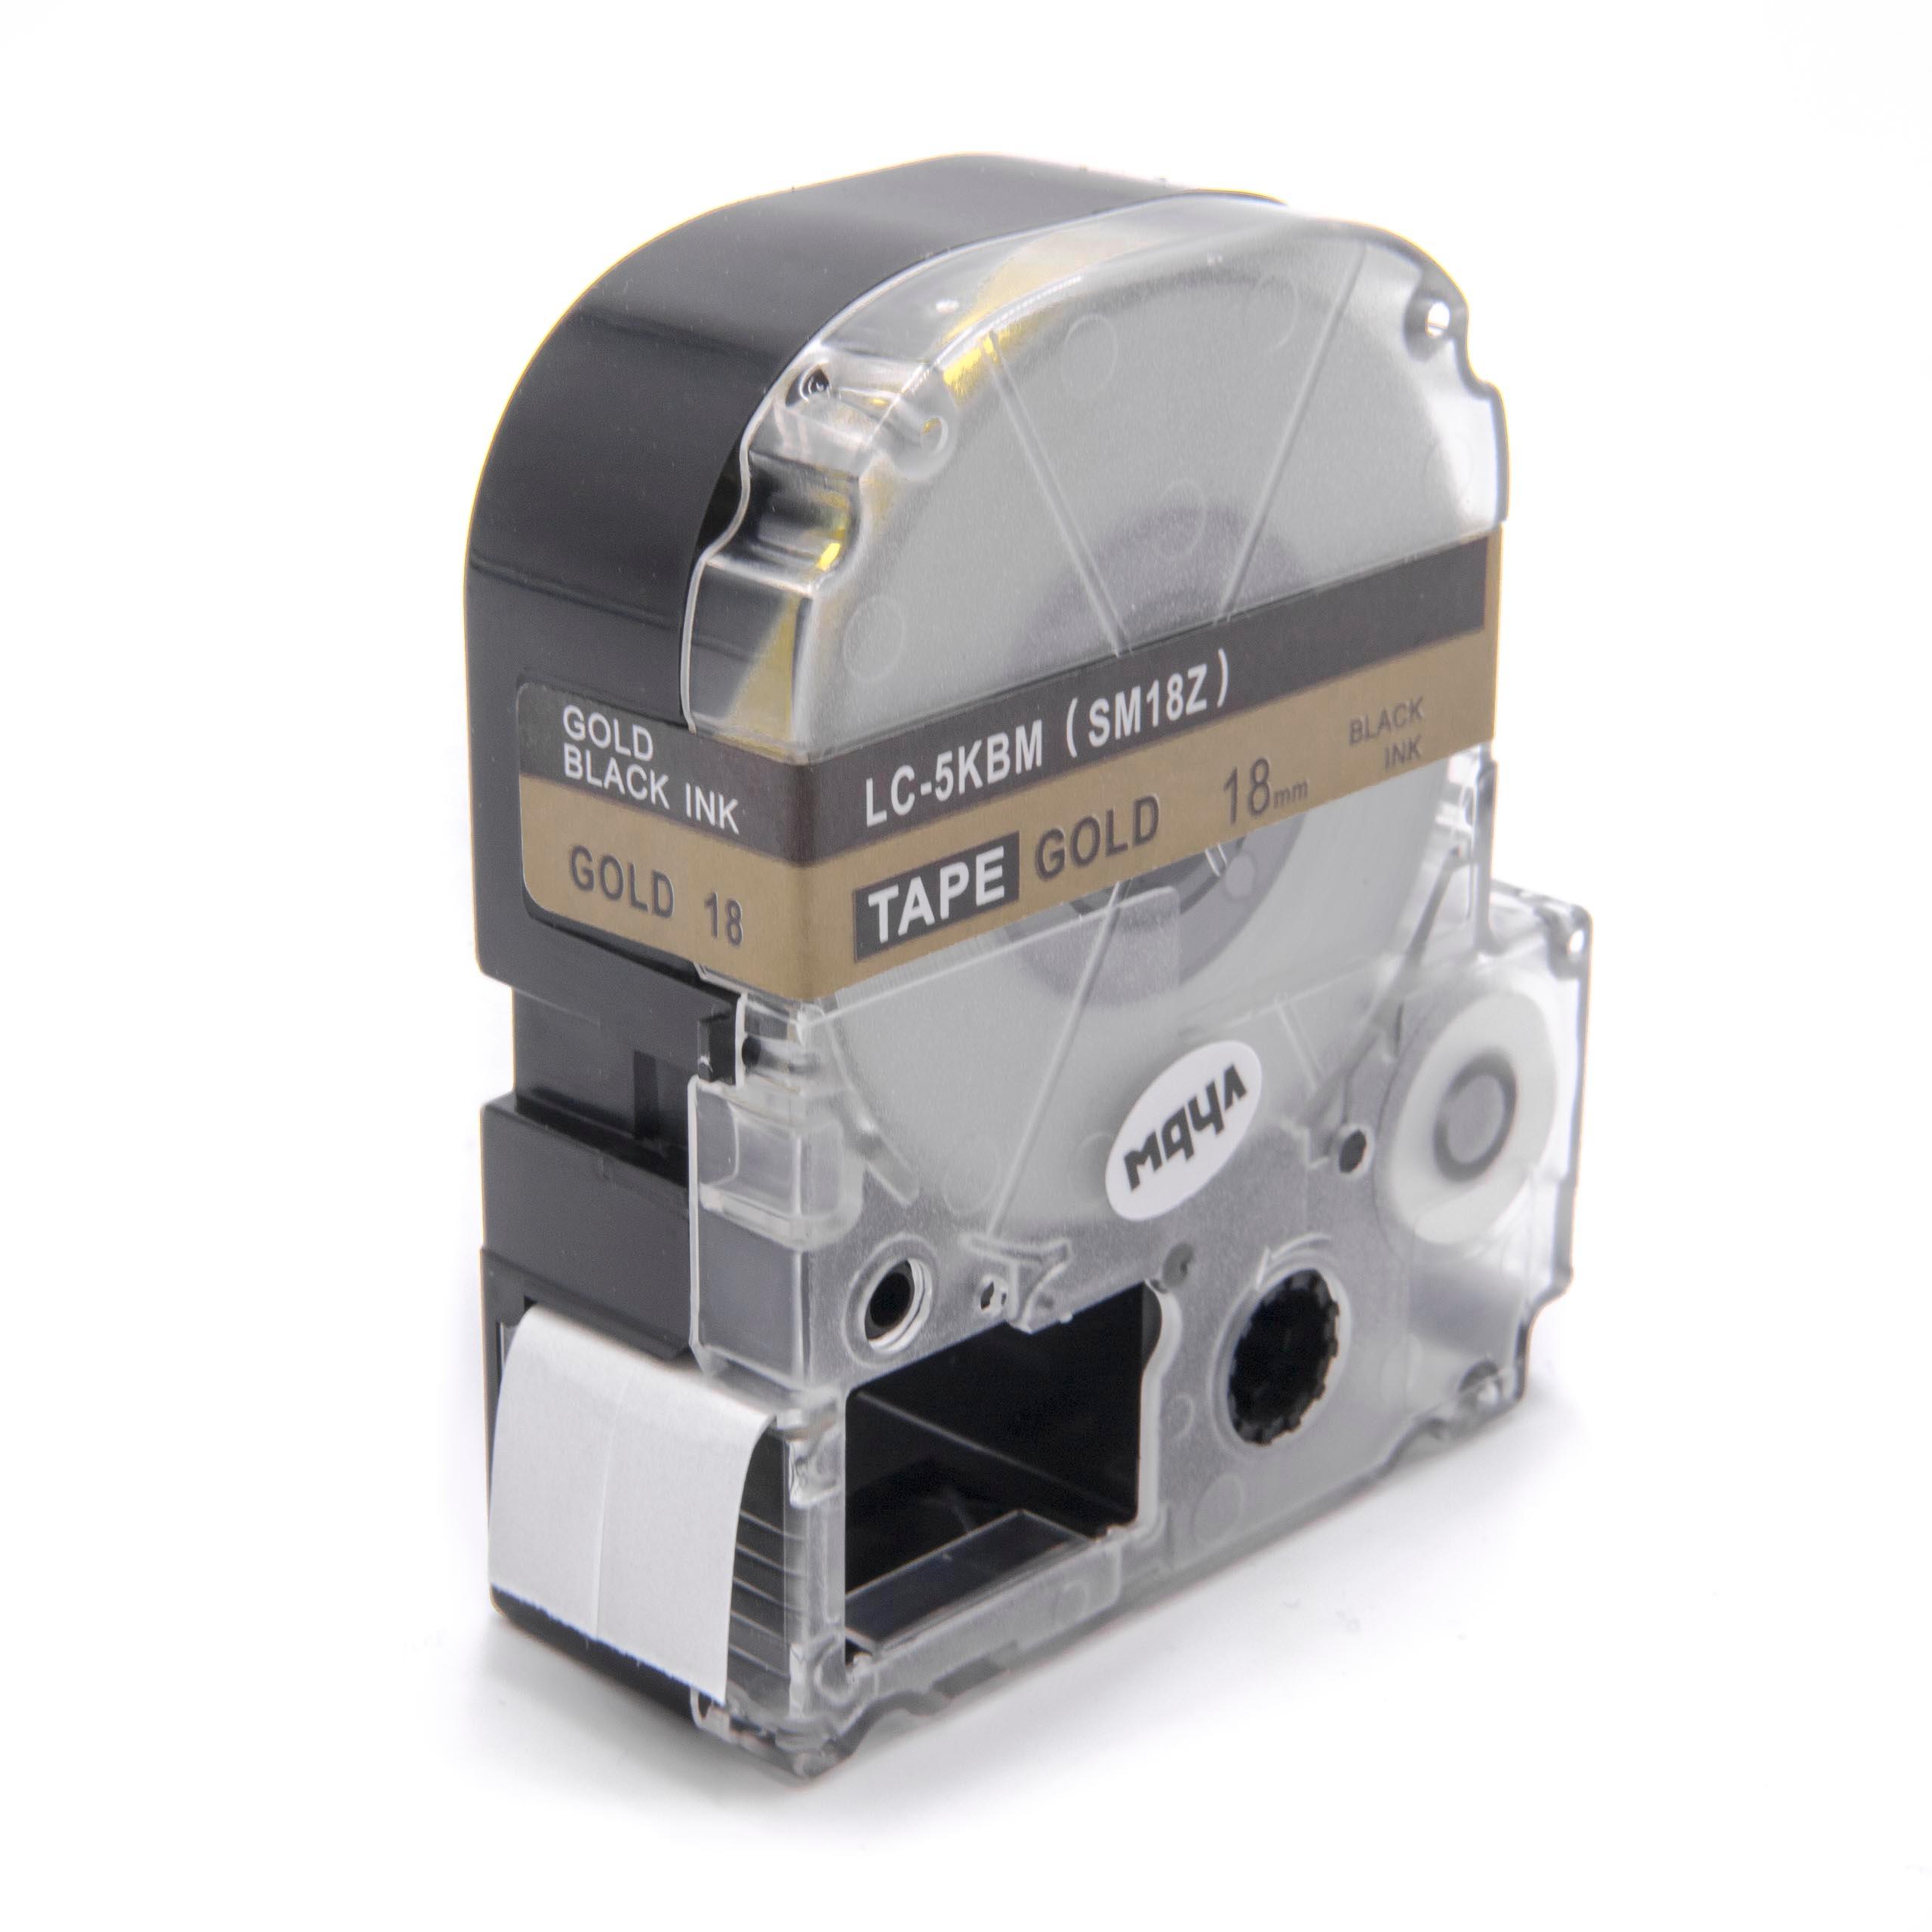 Cassetta nastro sostituisce Epson LC-5KBM per etichettatrice Epson 18mm nero su dorato